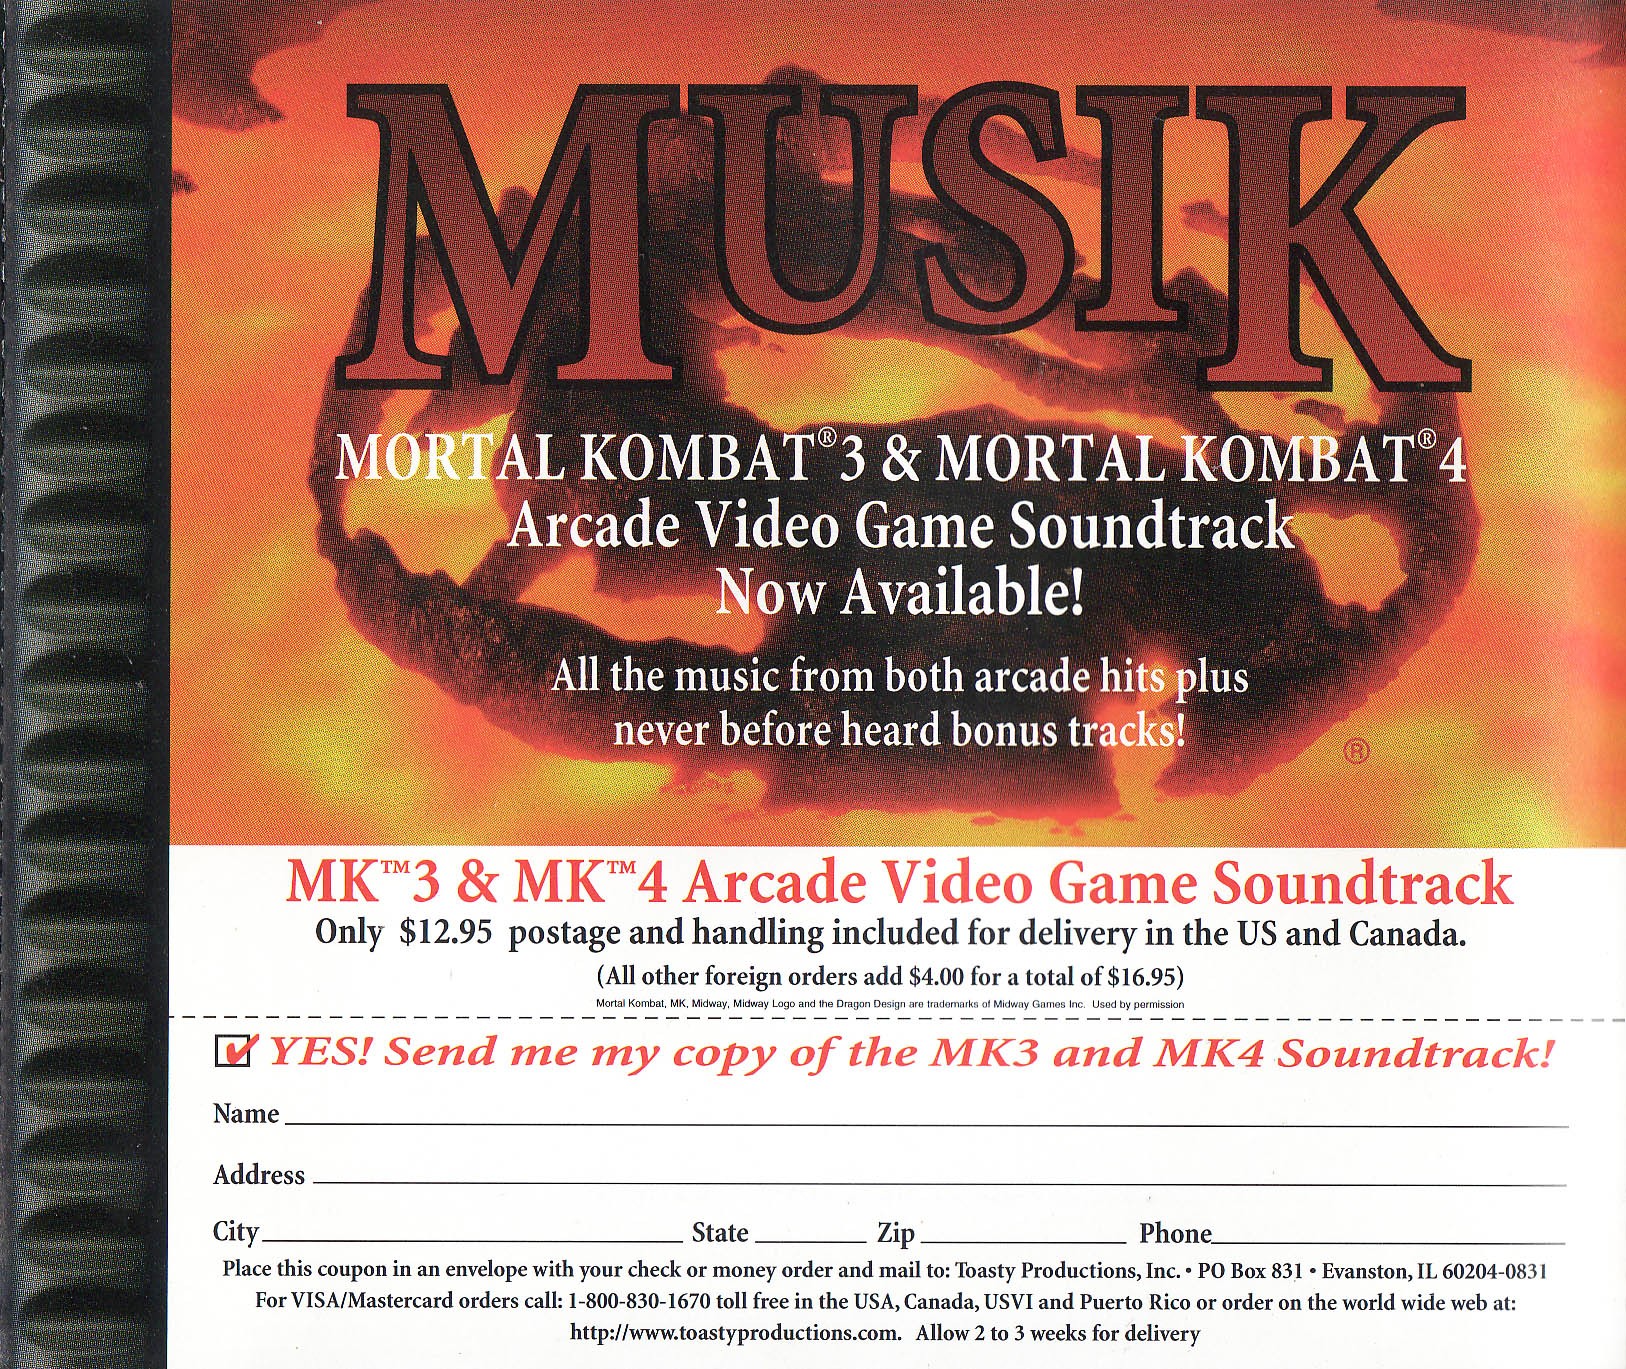 Mortal Kombat 4 [SLUS-00605] ROM Download - Sony PSX/PlayStation 1(PSX)